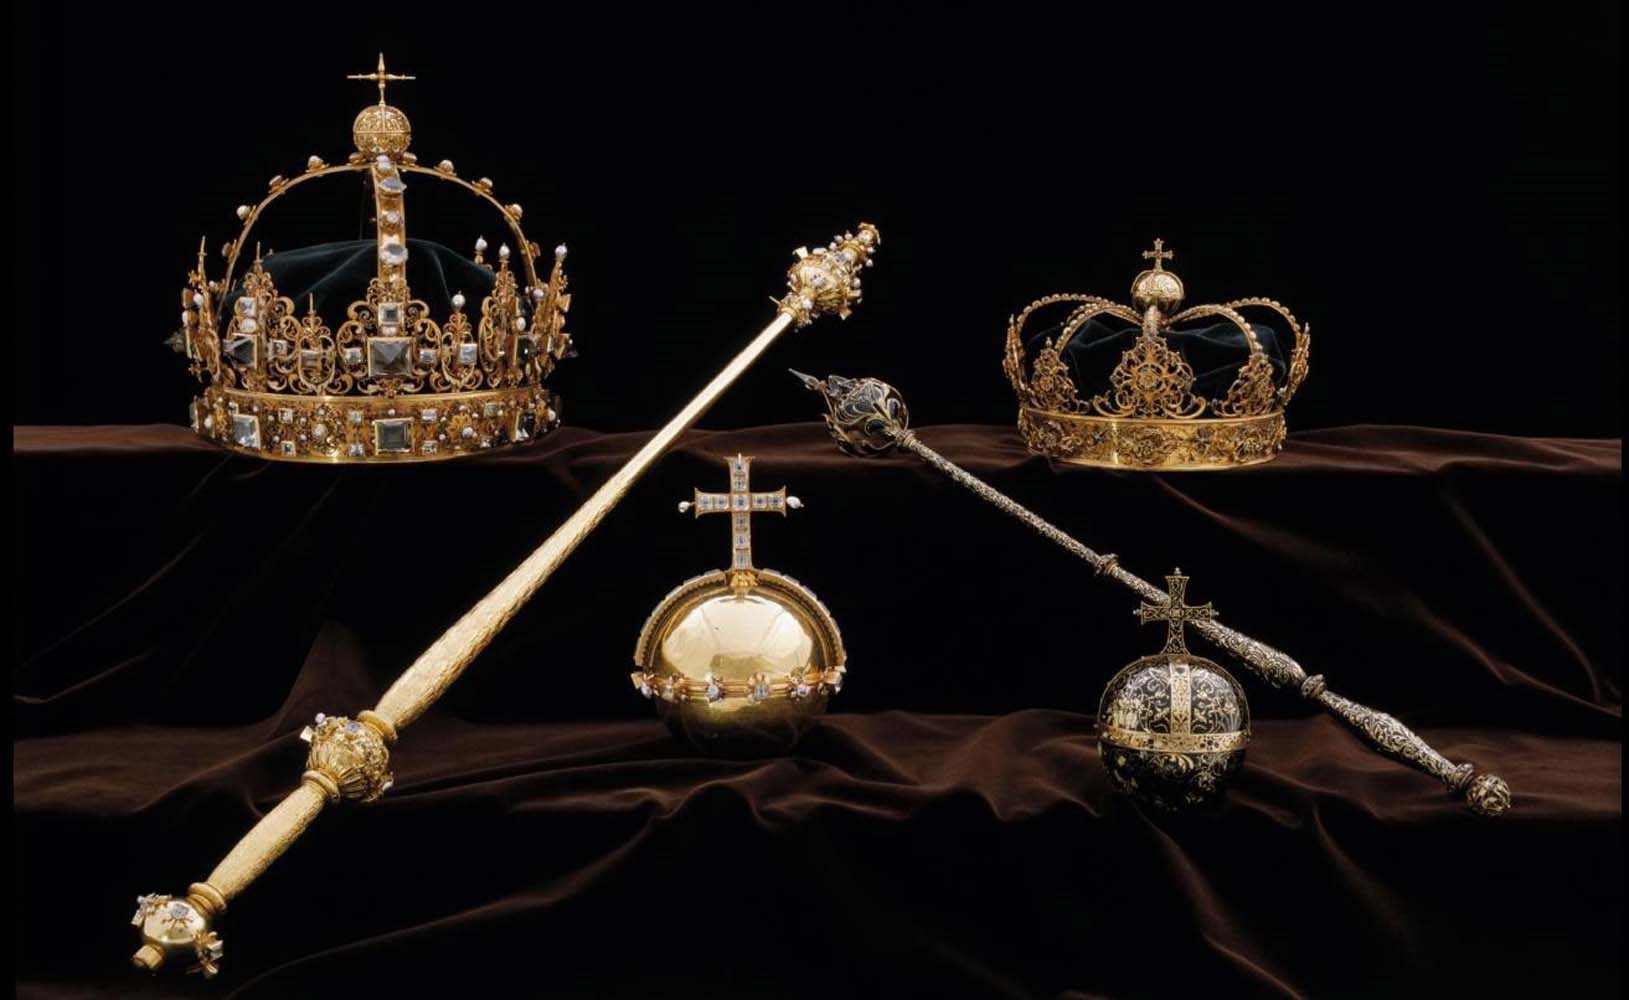 Insólito: Ladrones sustrajeron coronas de reyes suecos de catedral y escaparon en una lancha